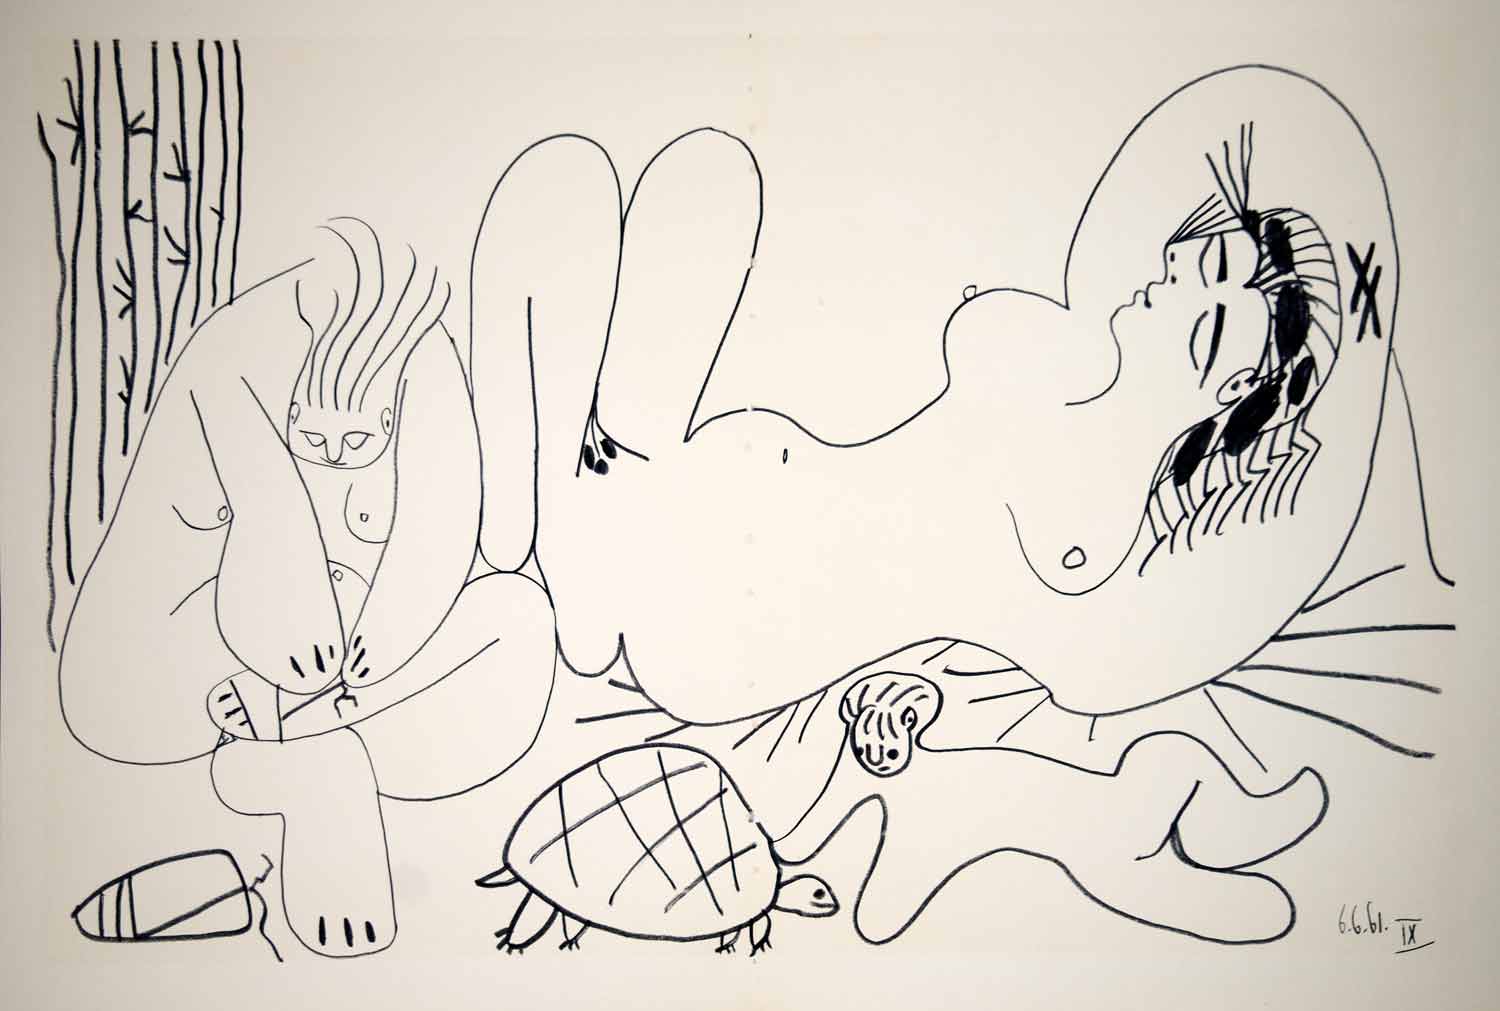 1962 Photolithograph Picasso Nude Bathers Art Dejeuner sur l'herbe Manet 6.6.61